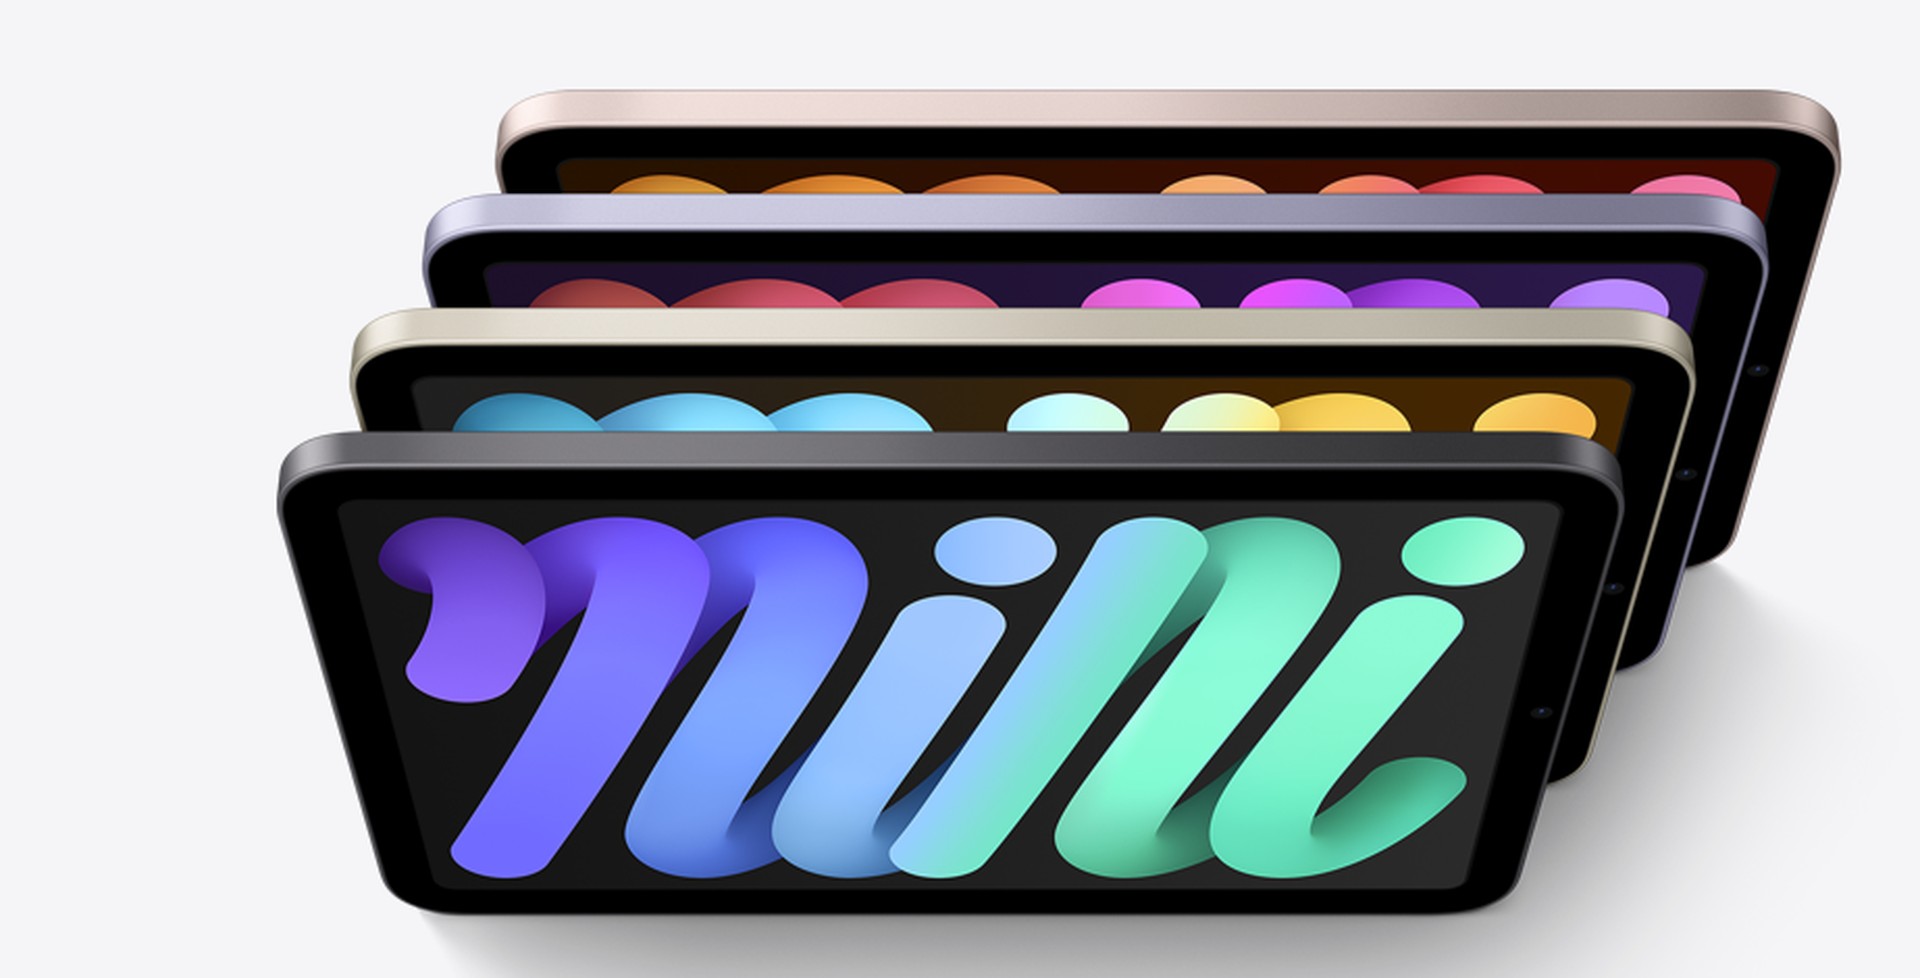 Apple iPad Mini (2021) si můžete vybrat ze 4 barevných variant – hvězdná bílá, vesmírná šedá, fialová a růžová